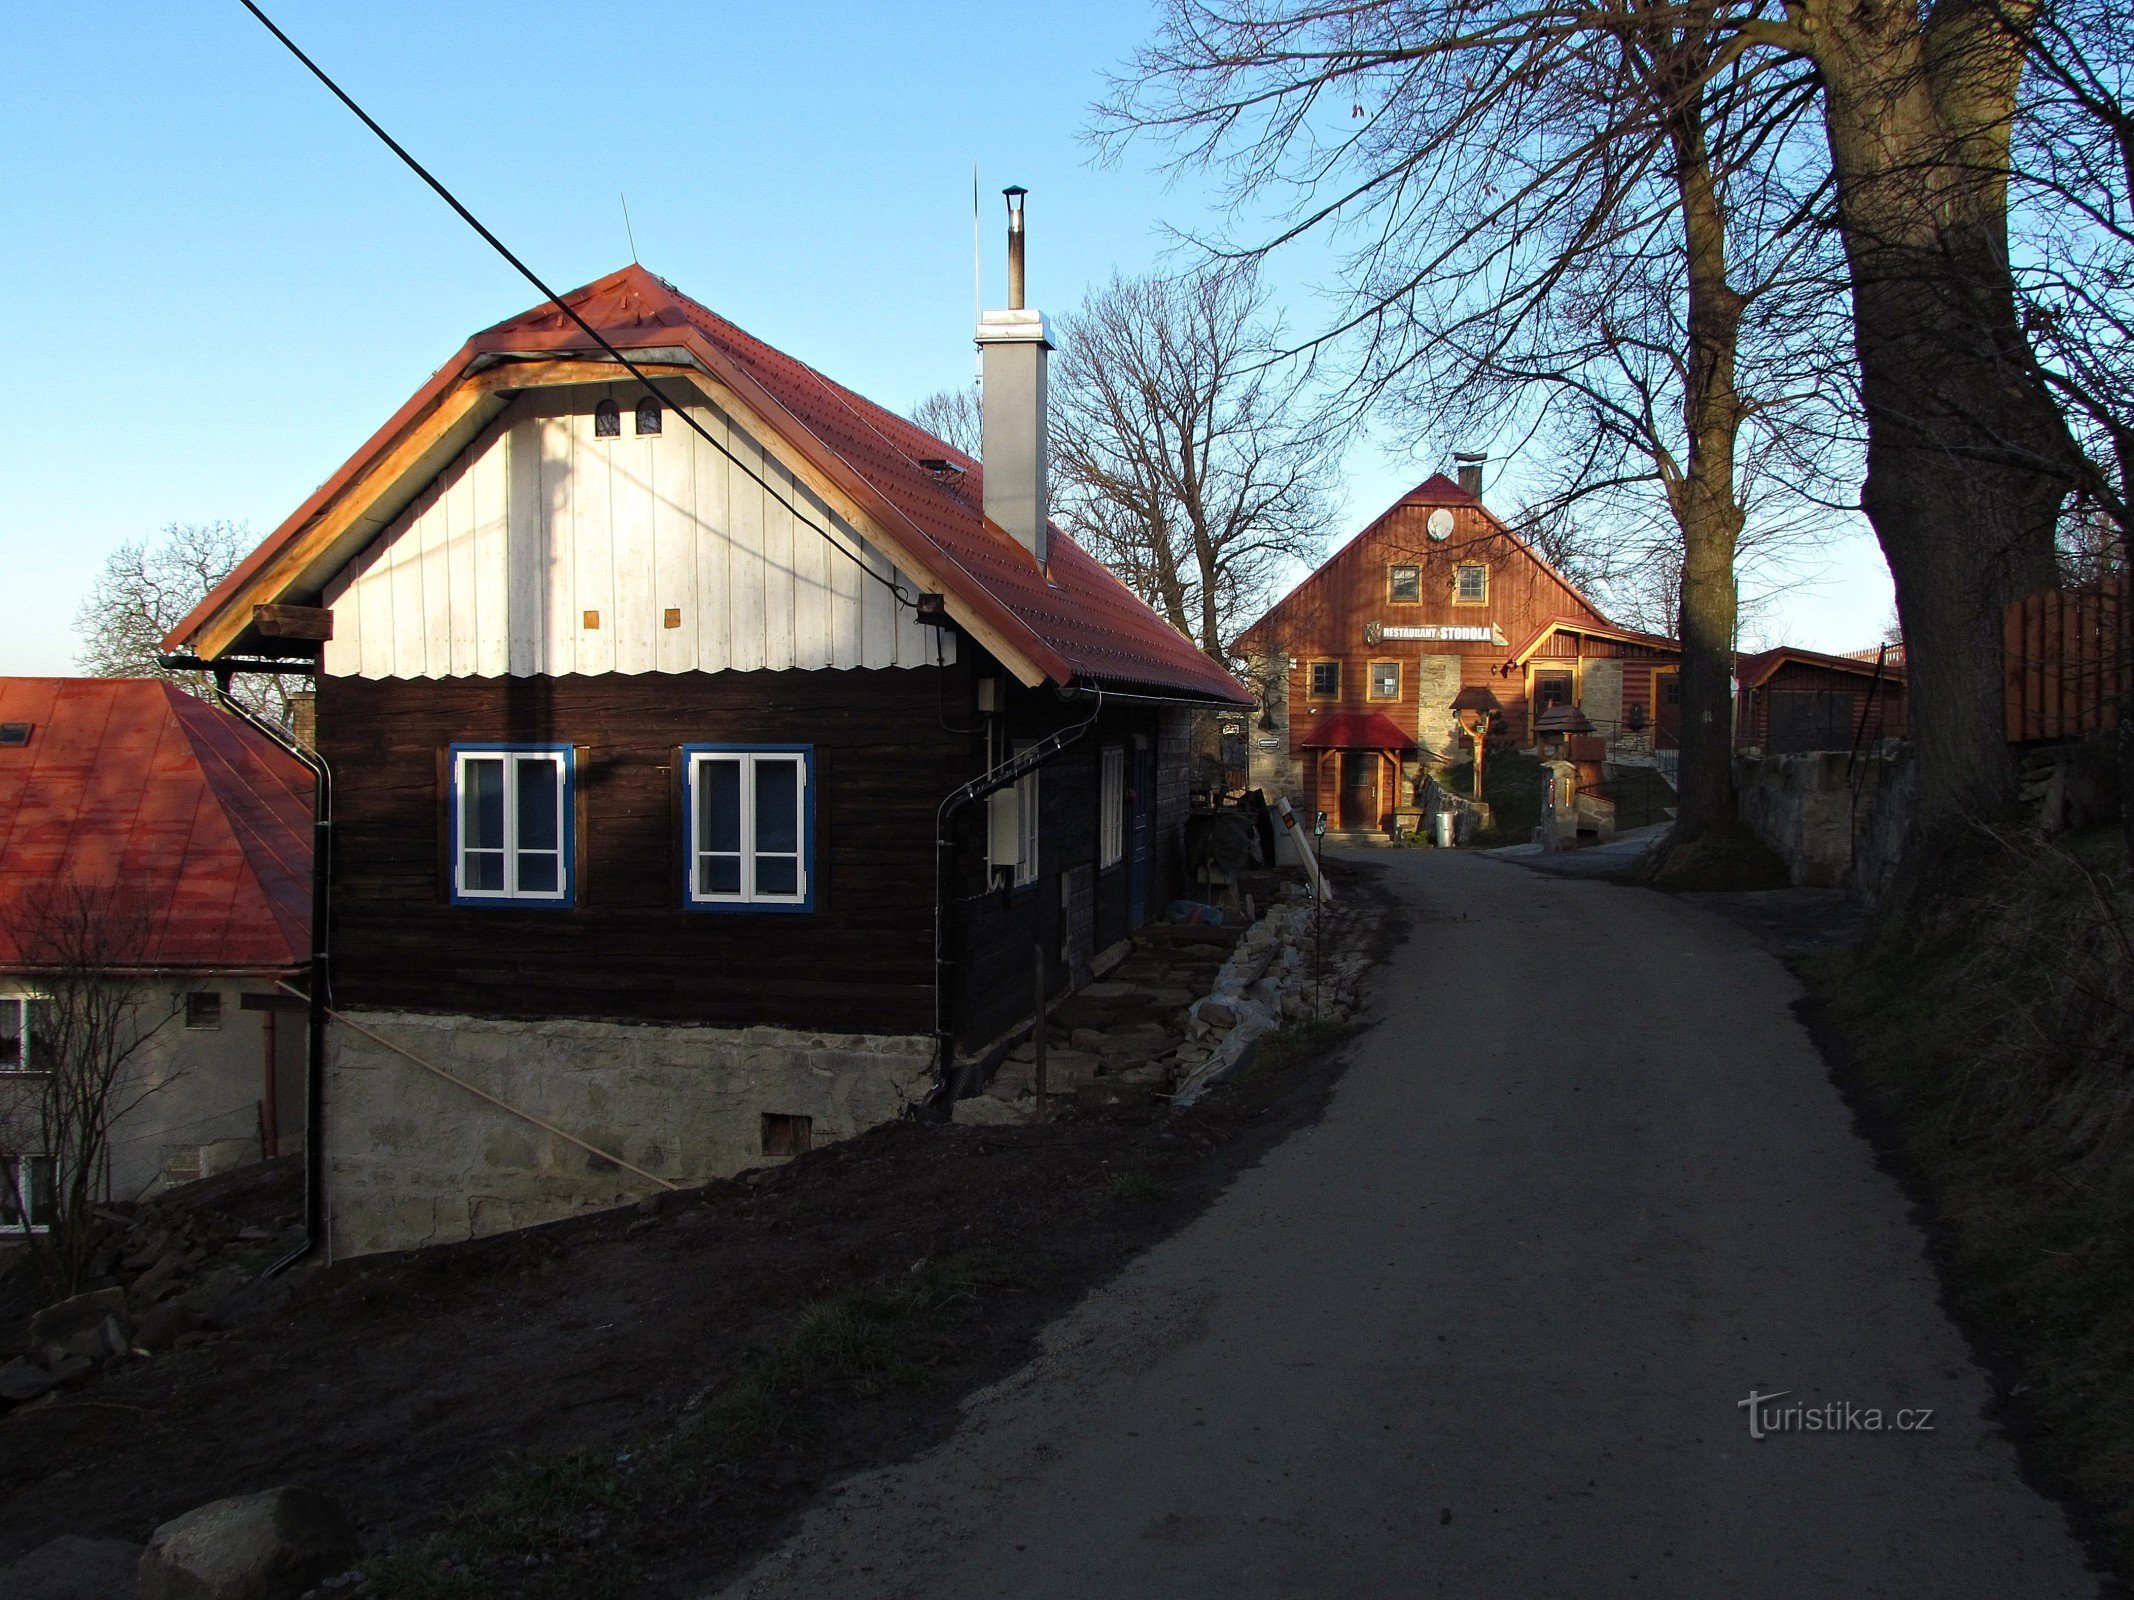 Pulčín - un beau village valaque